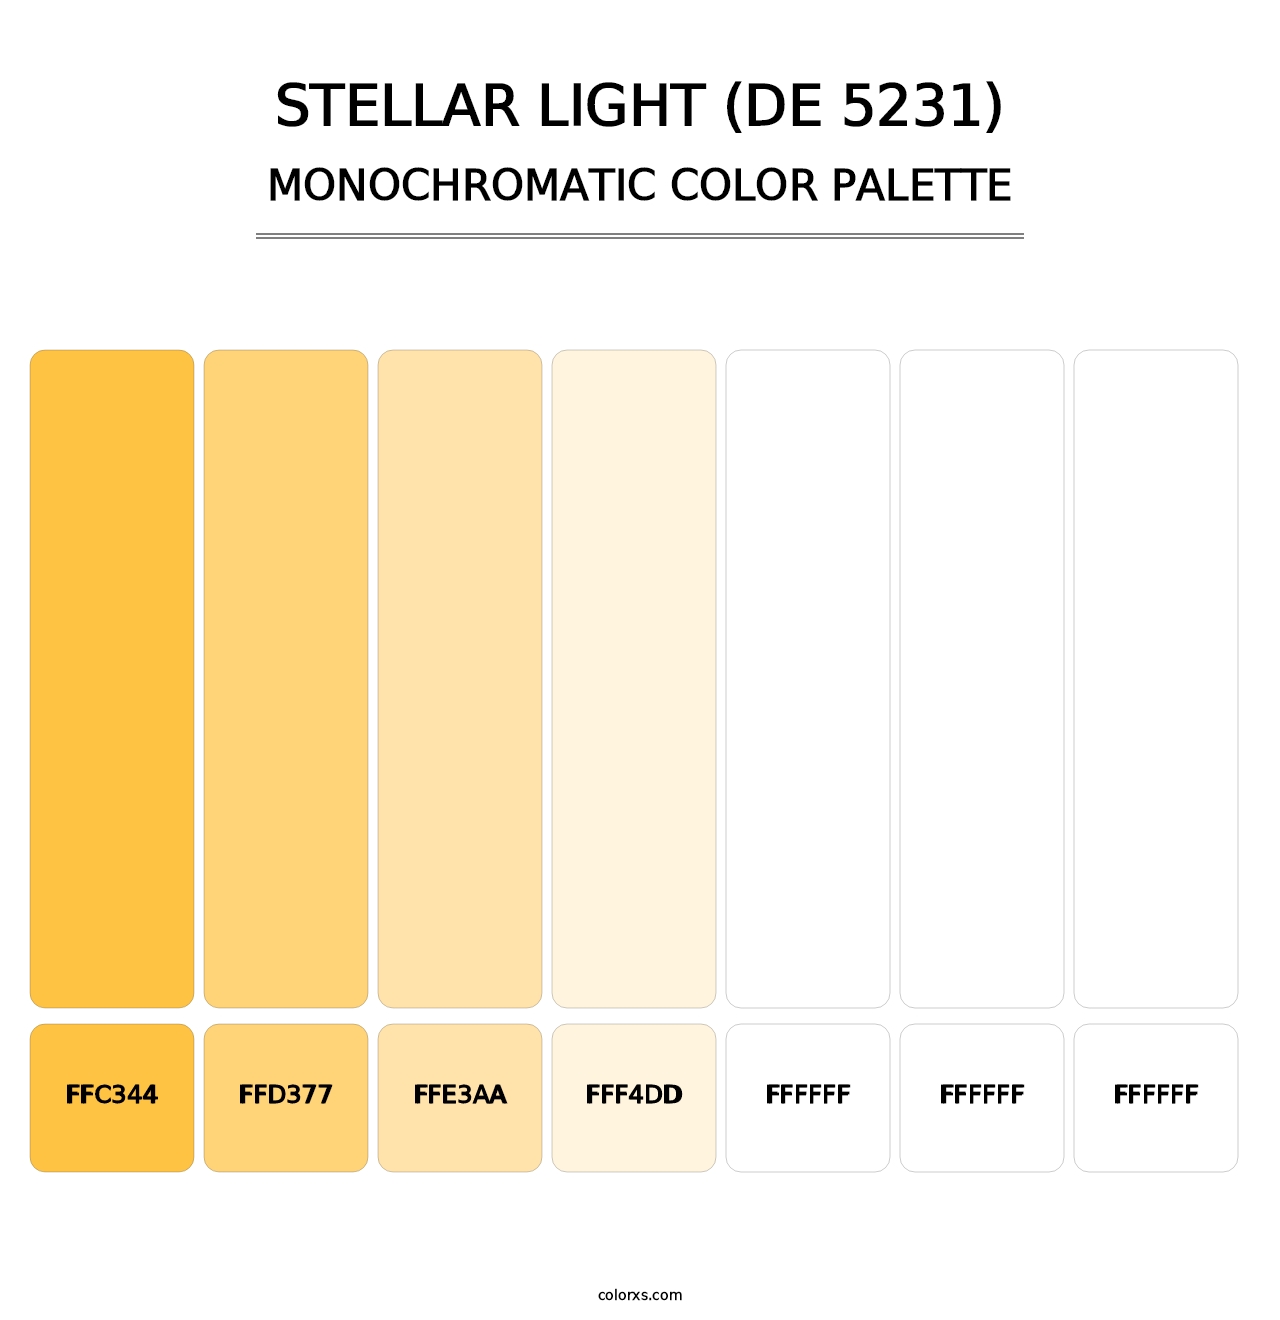 Stellar Light (DE 5231) - Monochromatic Color Palette